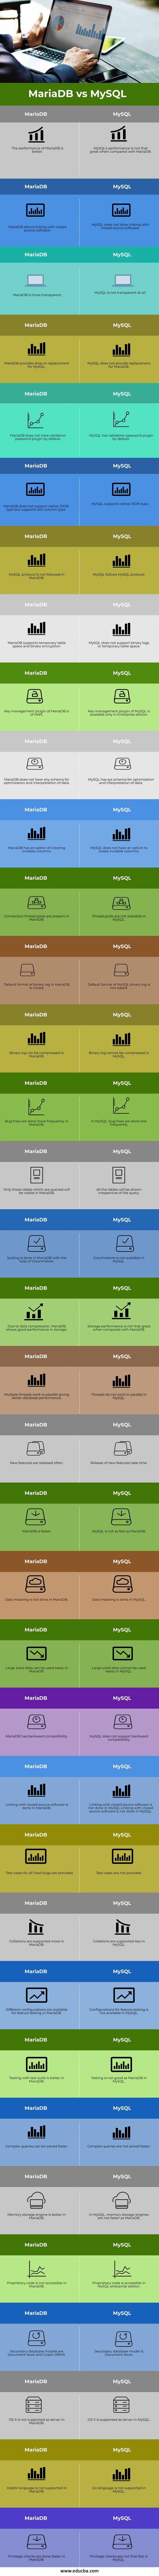 MariaDB vs MySQL info